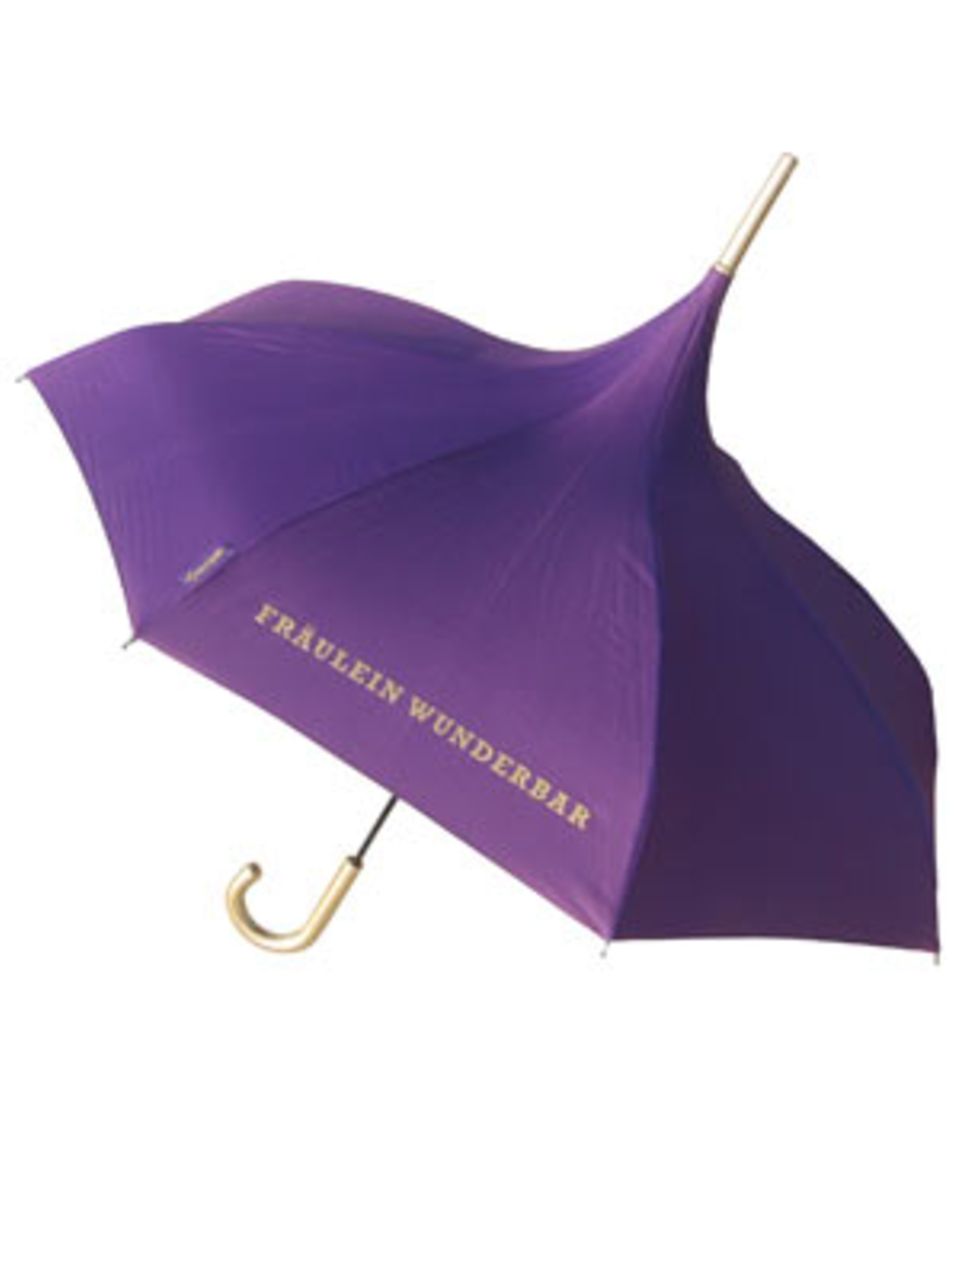 Damit schon der Weg in die Uni Spaß macht: Schirm mit Schriftzug "Fräulein Wunderbar" von Pinja, um 24 Euro.